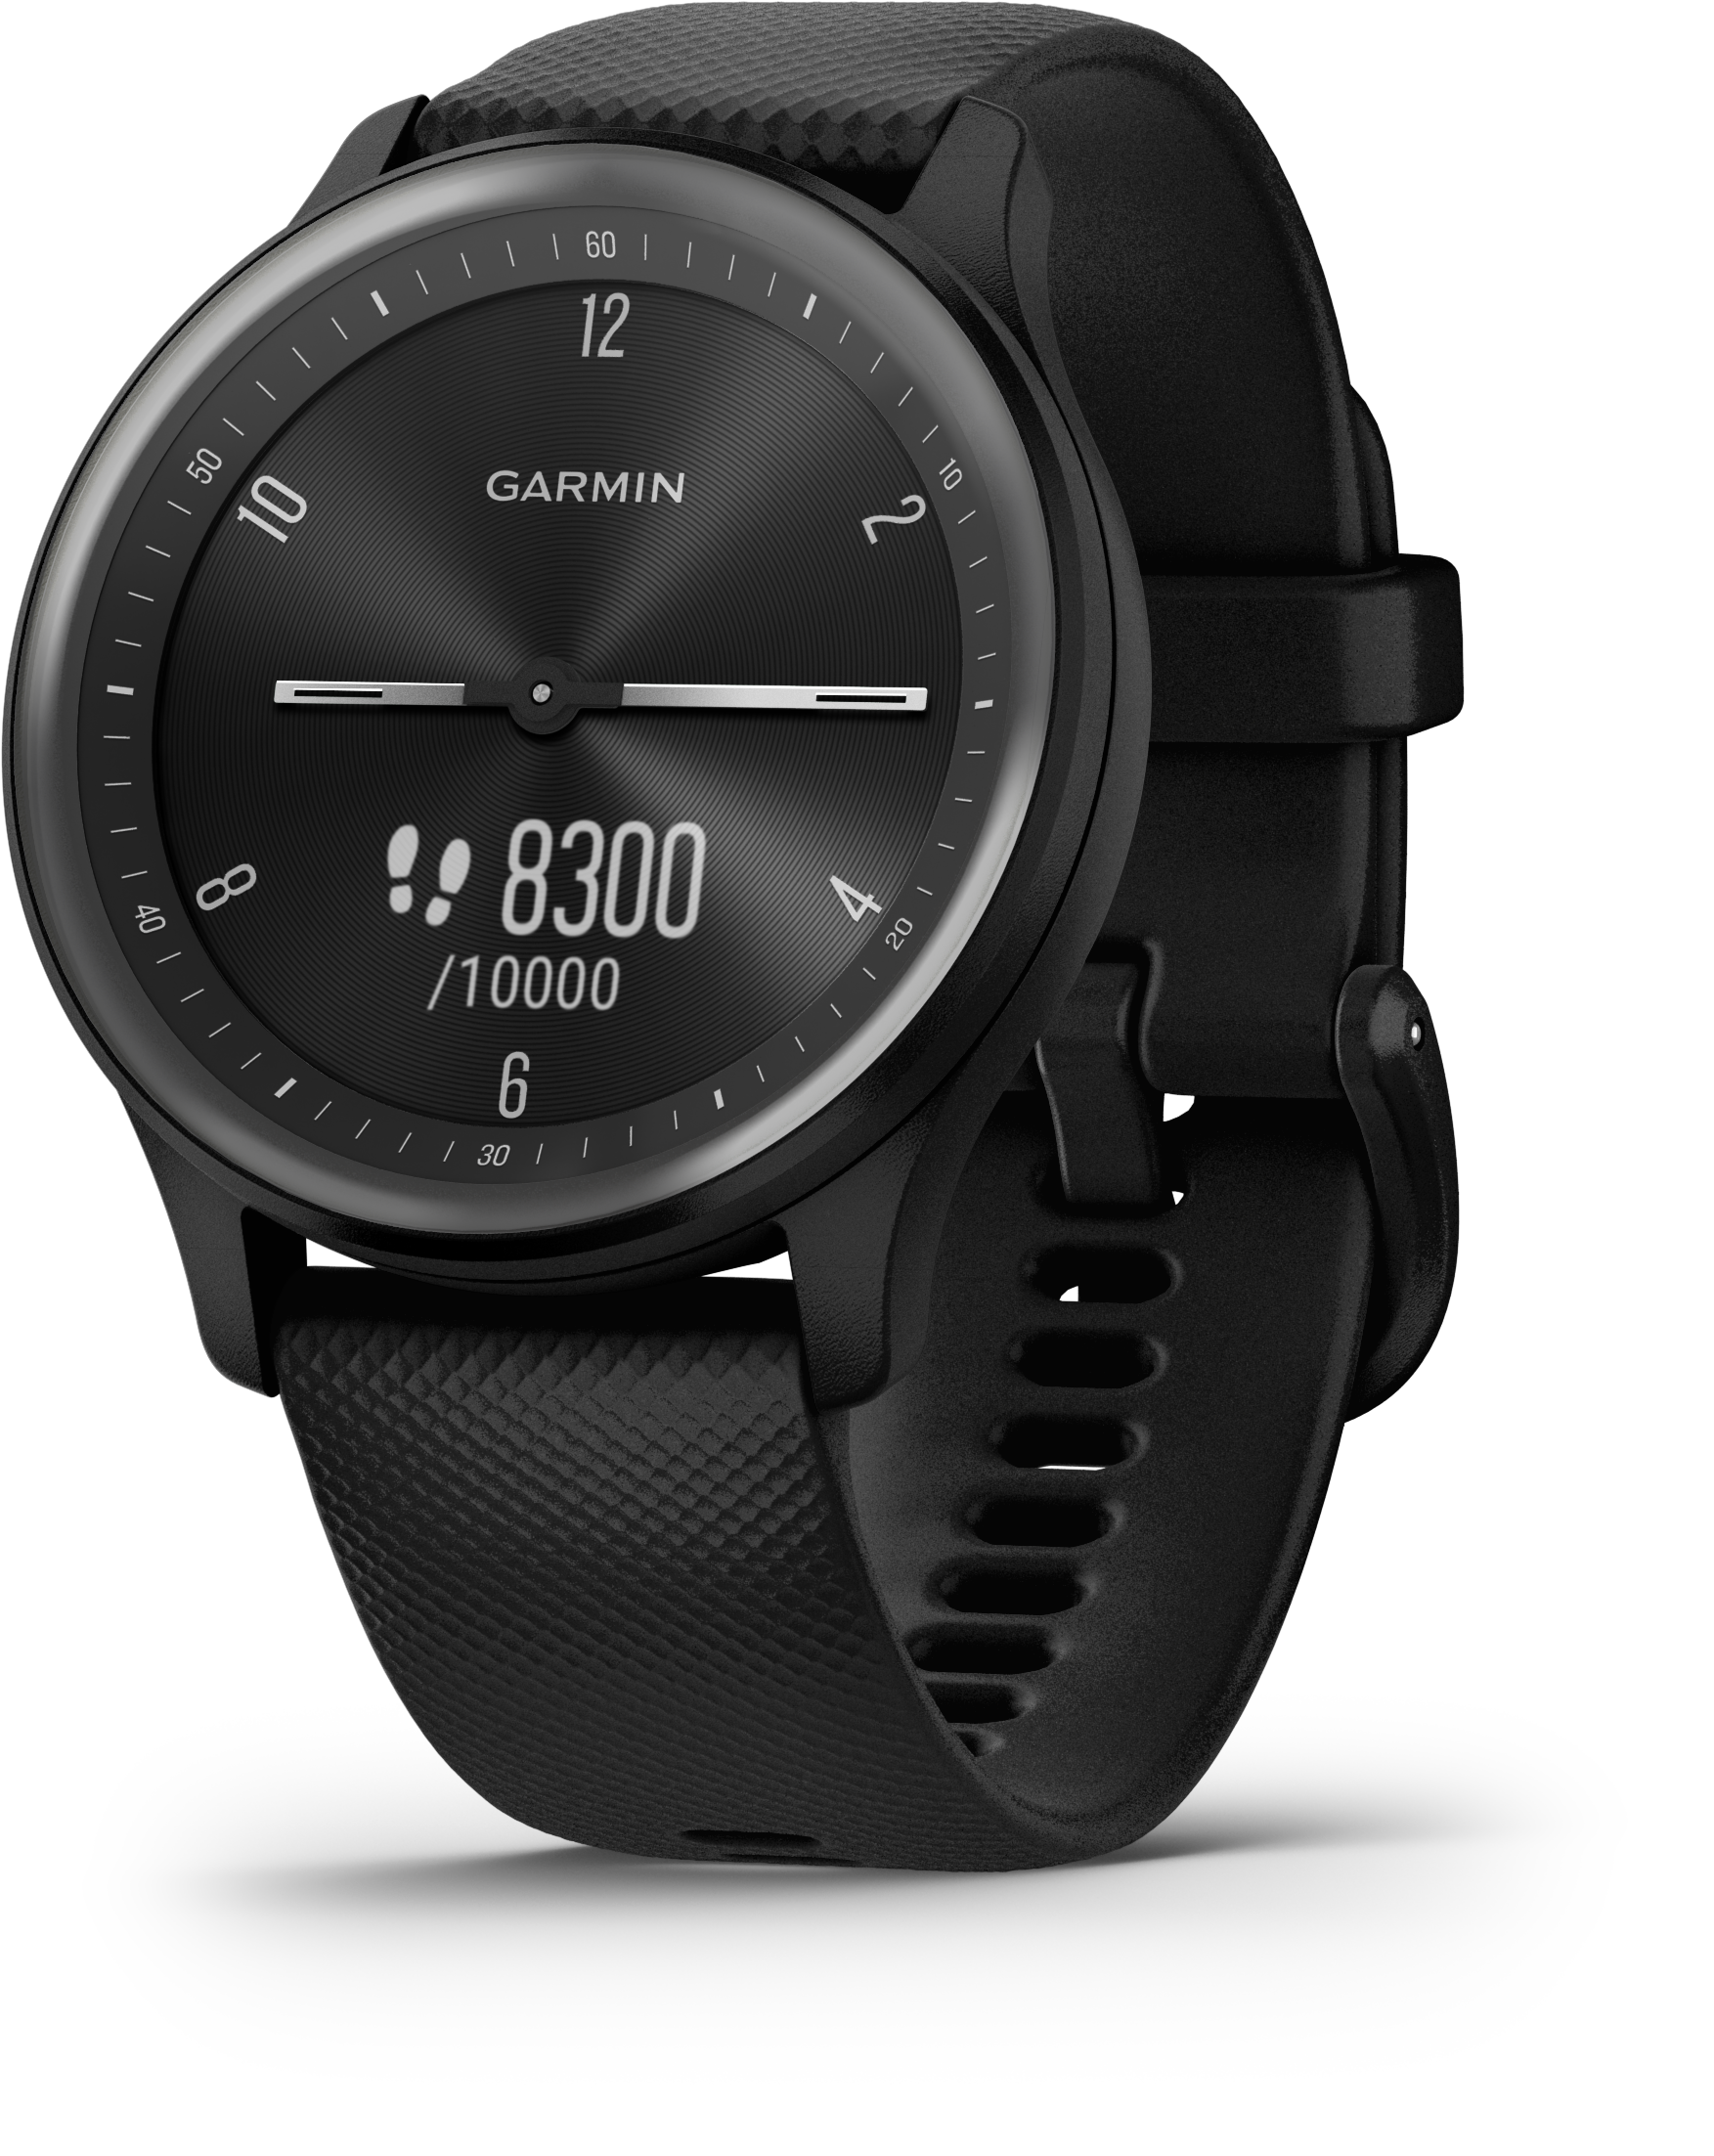 Smartwatch mit analogen Zeigern und Touchdisplay